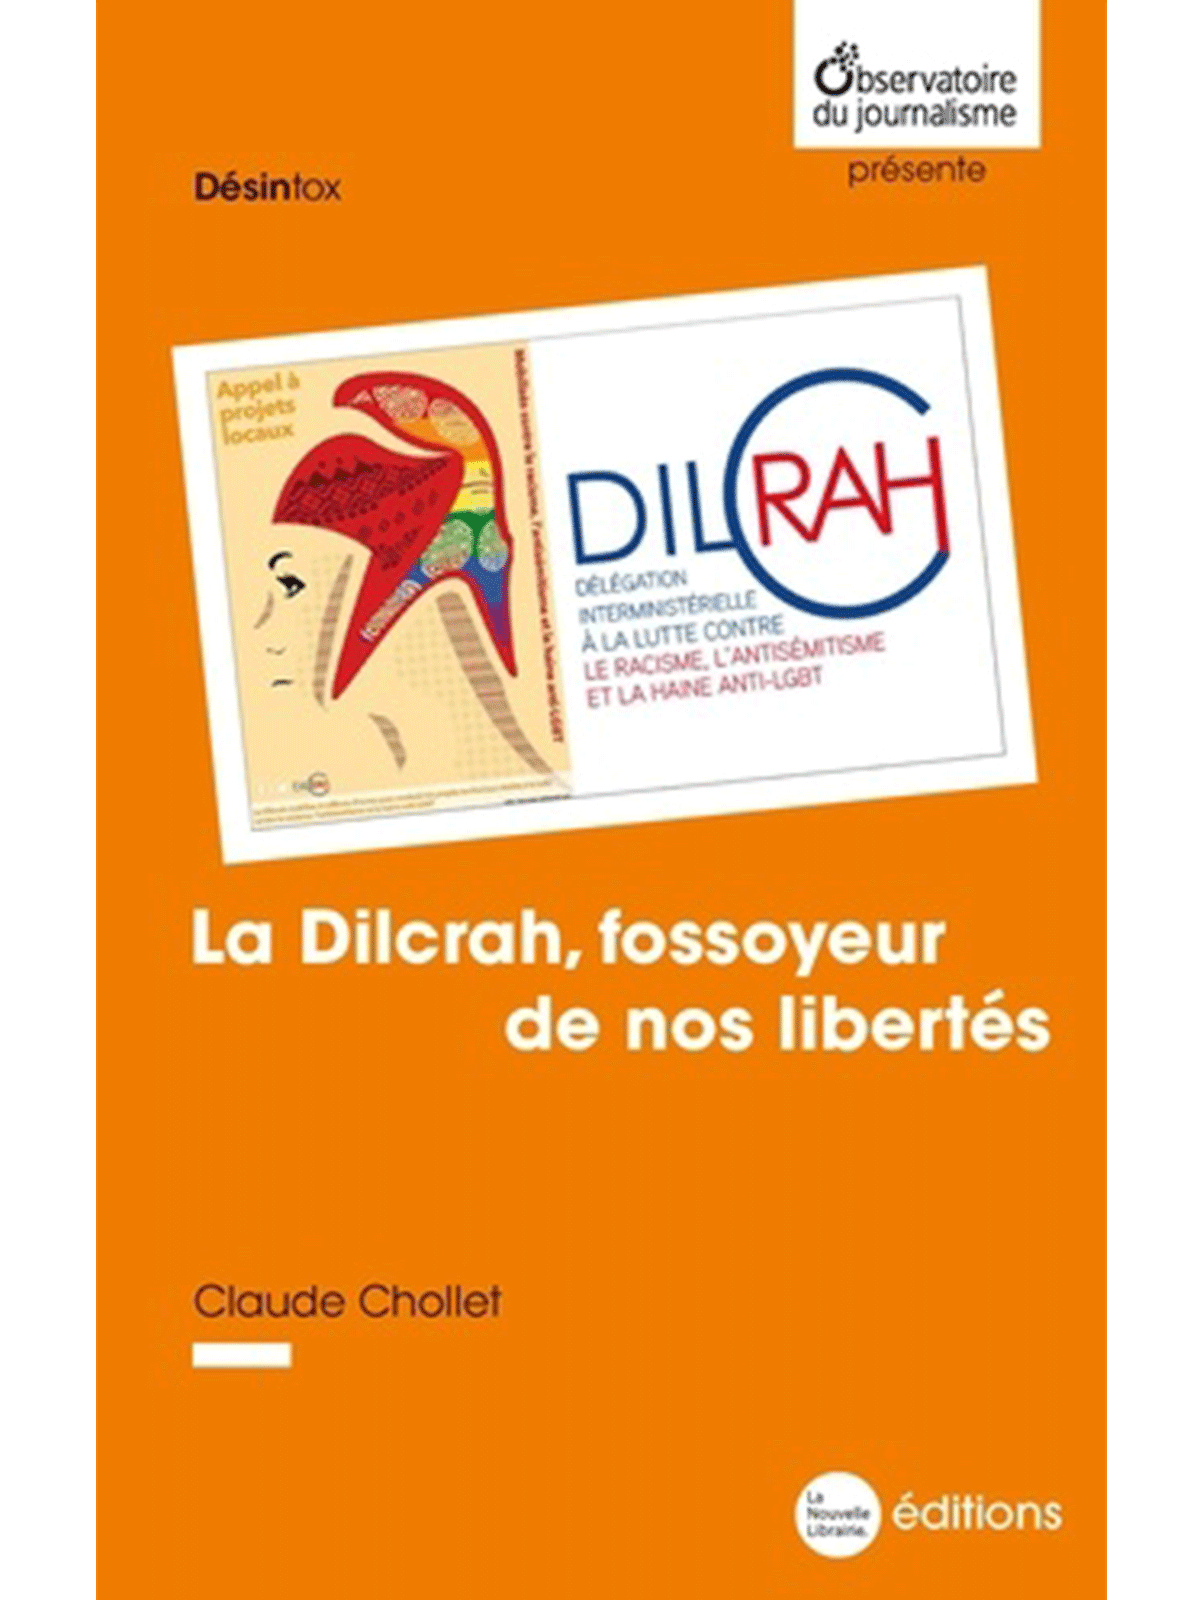 Claude Chollet : La Dilcrah, fossoyeur de nos libertés